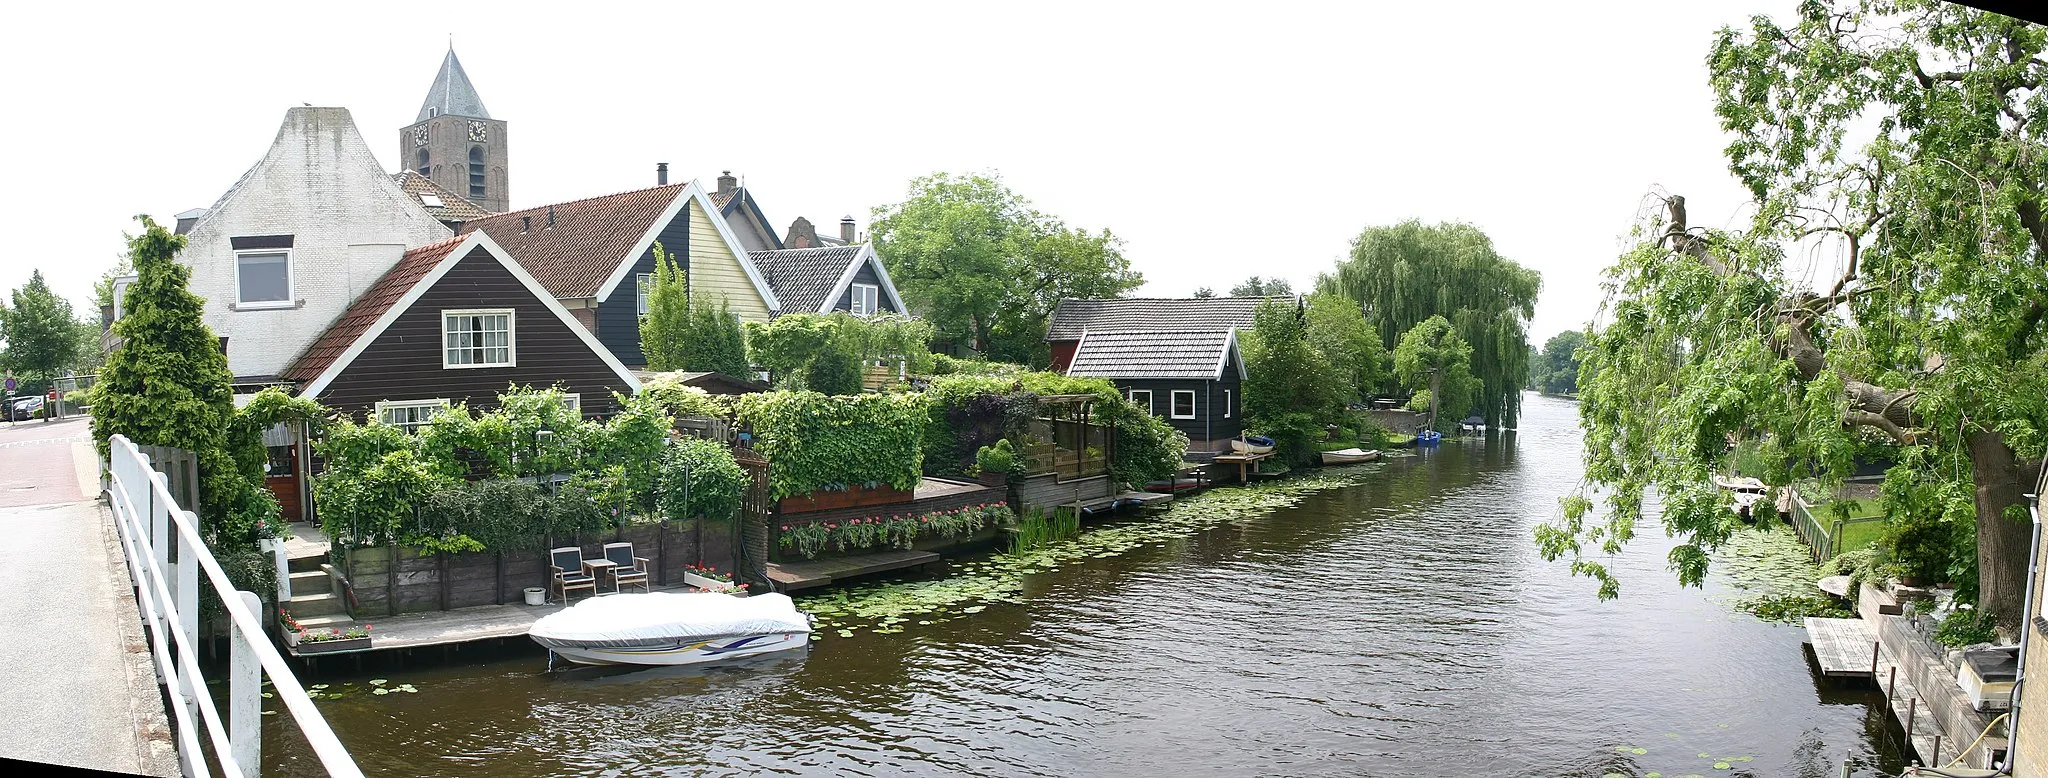 Photo showing: La rivière Alblas dans le village d'Oud Alblas au Pays-Bas (NL)